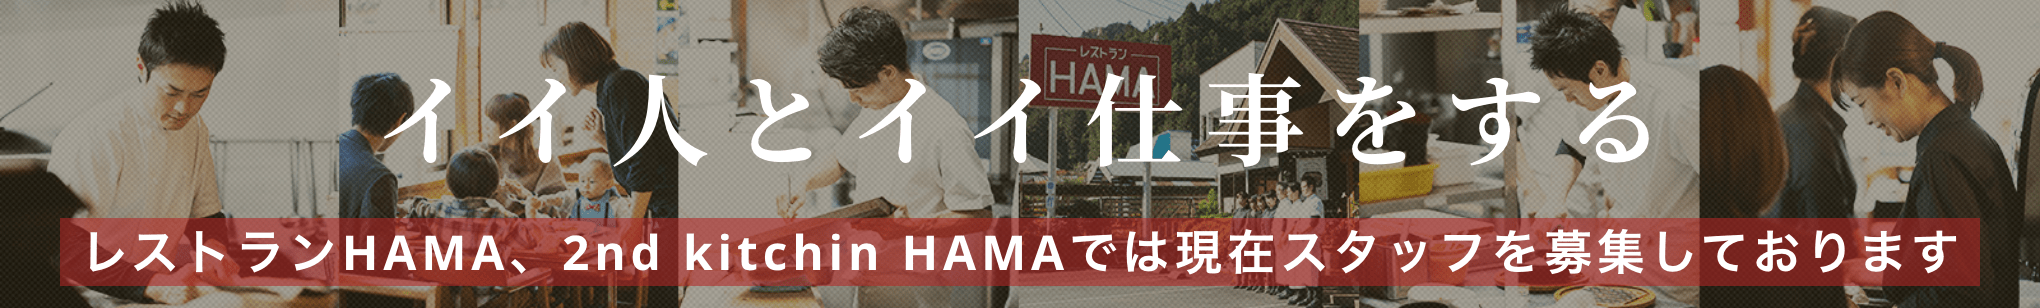 イイ人とイイ仕事をする レストランHAMA、2nd kitchin HAMAでは現在スタッフを募集しております